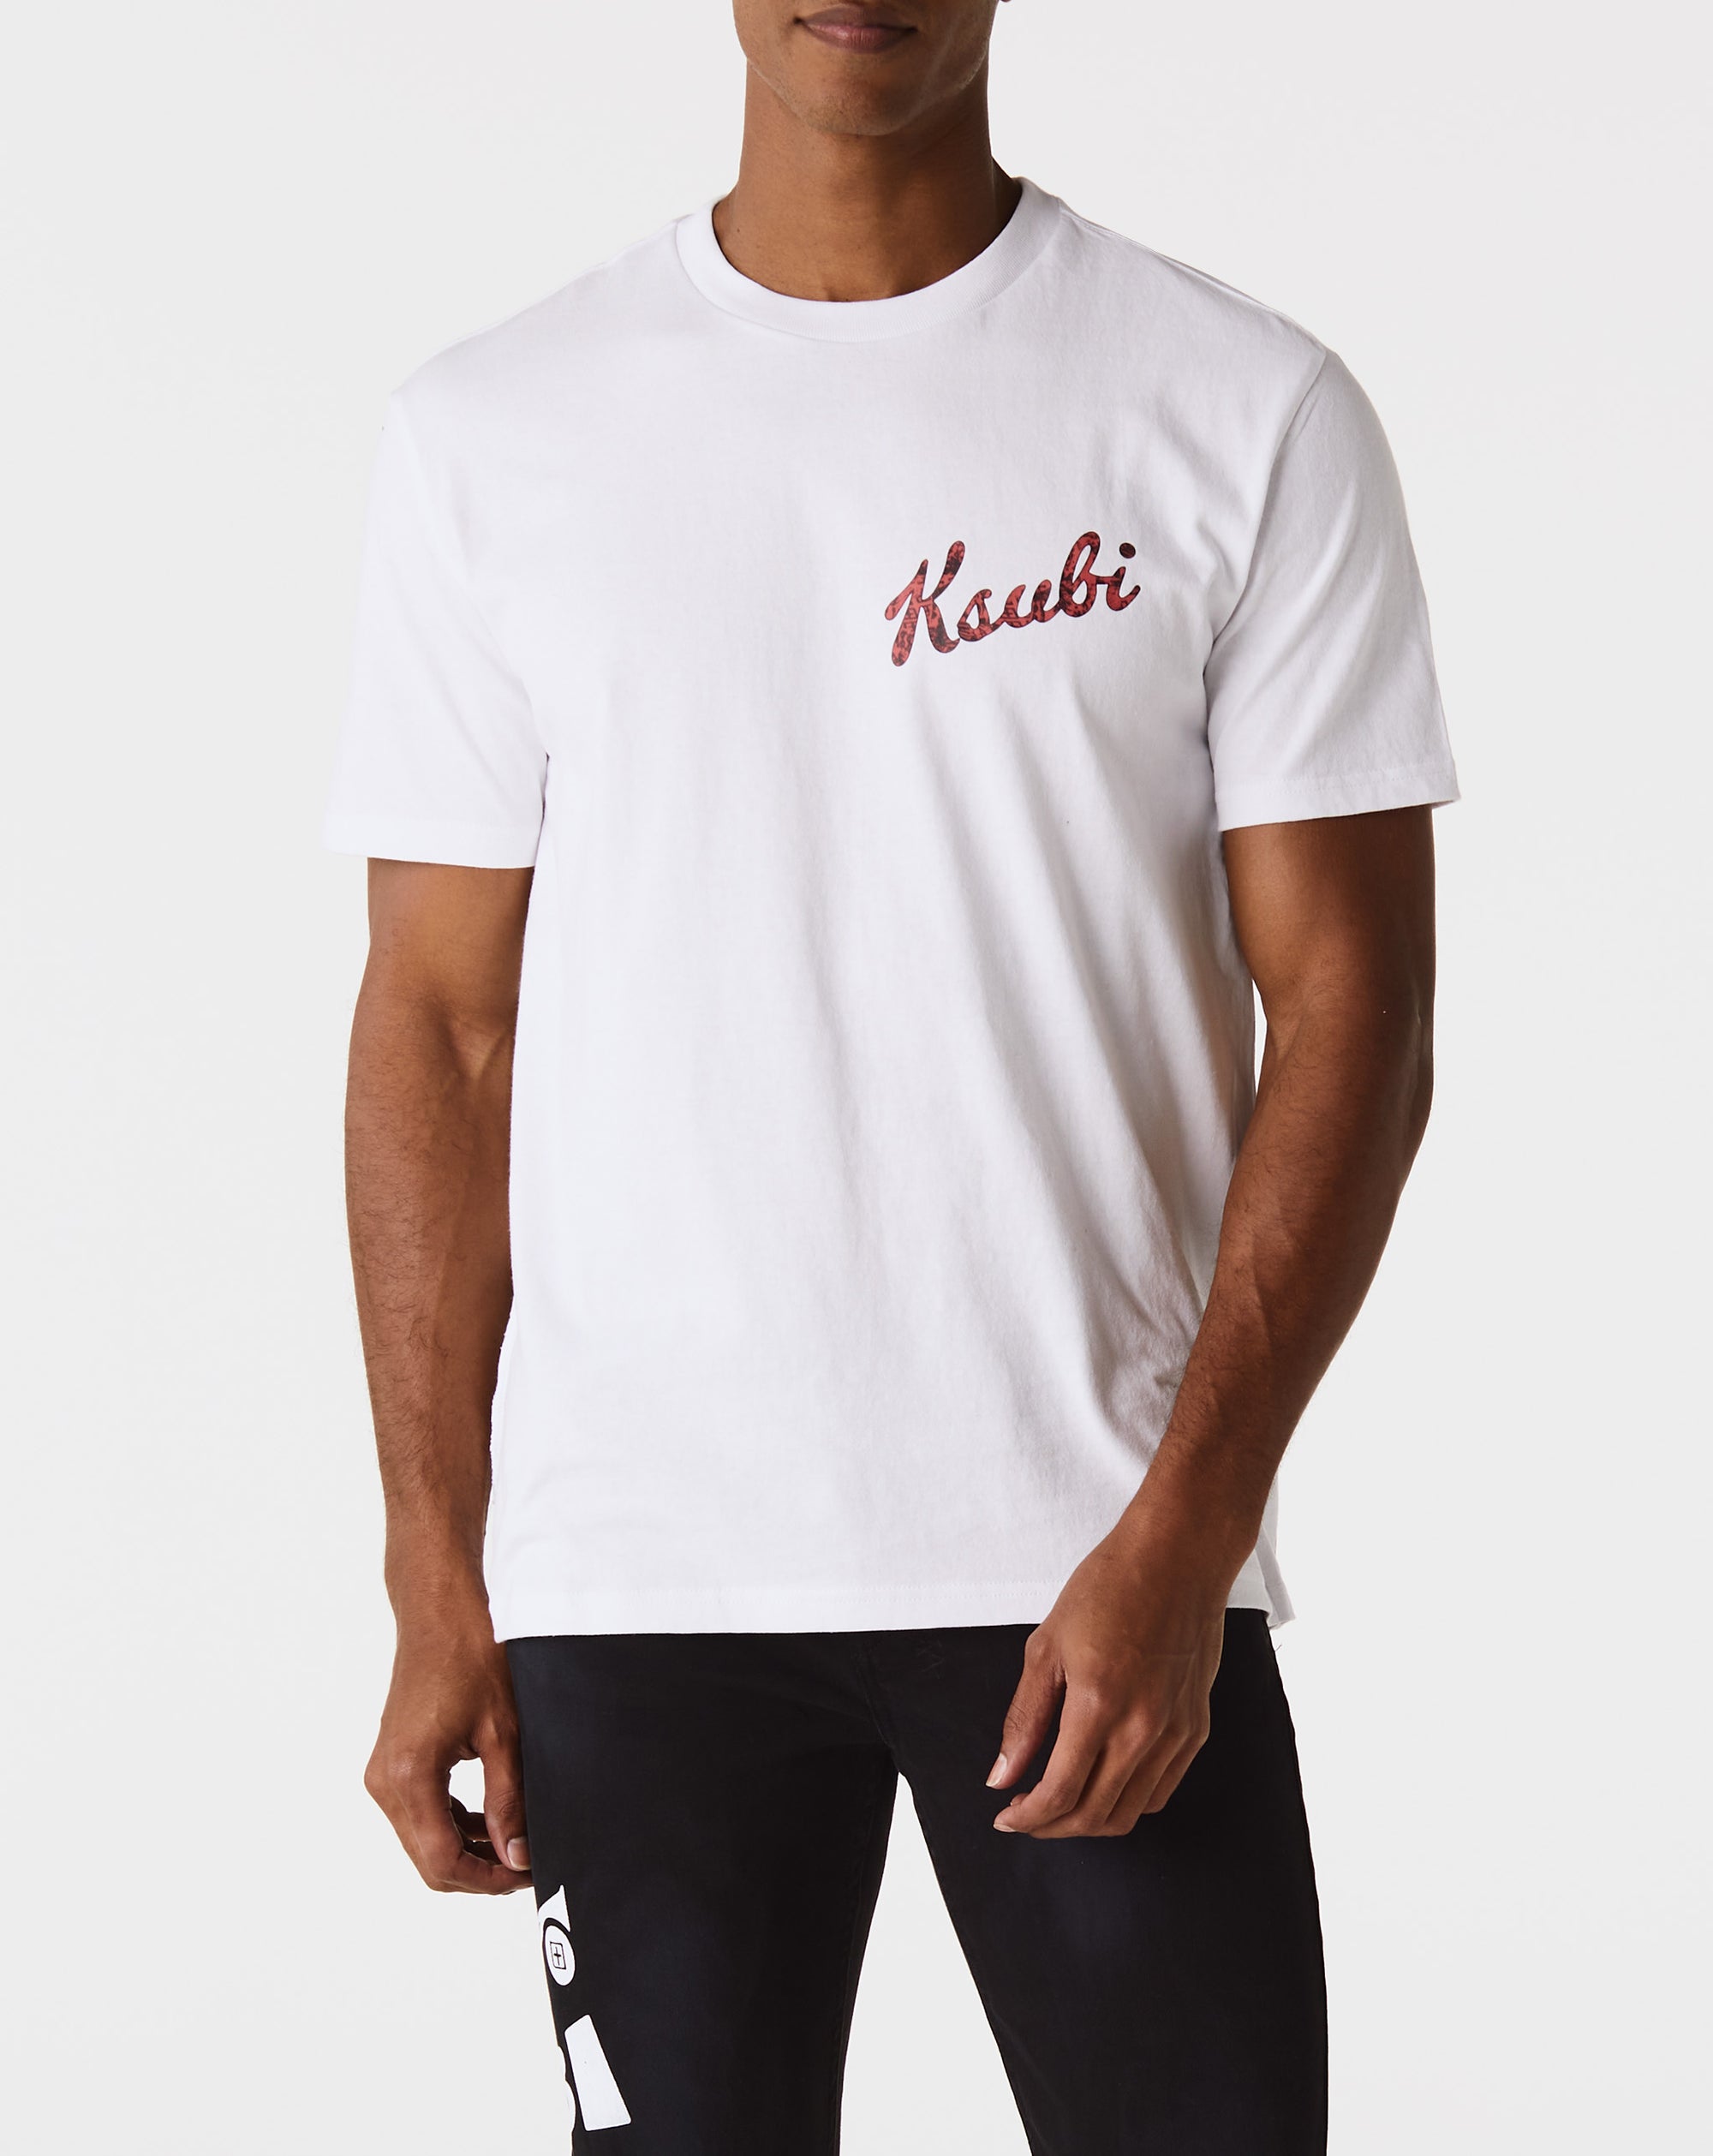 Ksubi Autograph Kash T-Shirt - Rule of Next Apparel